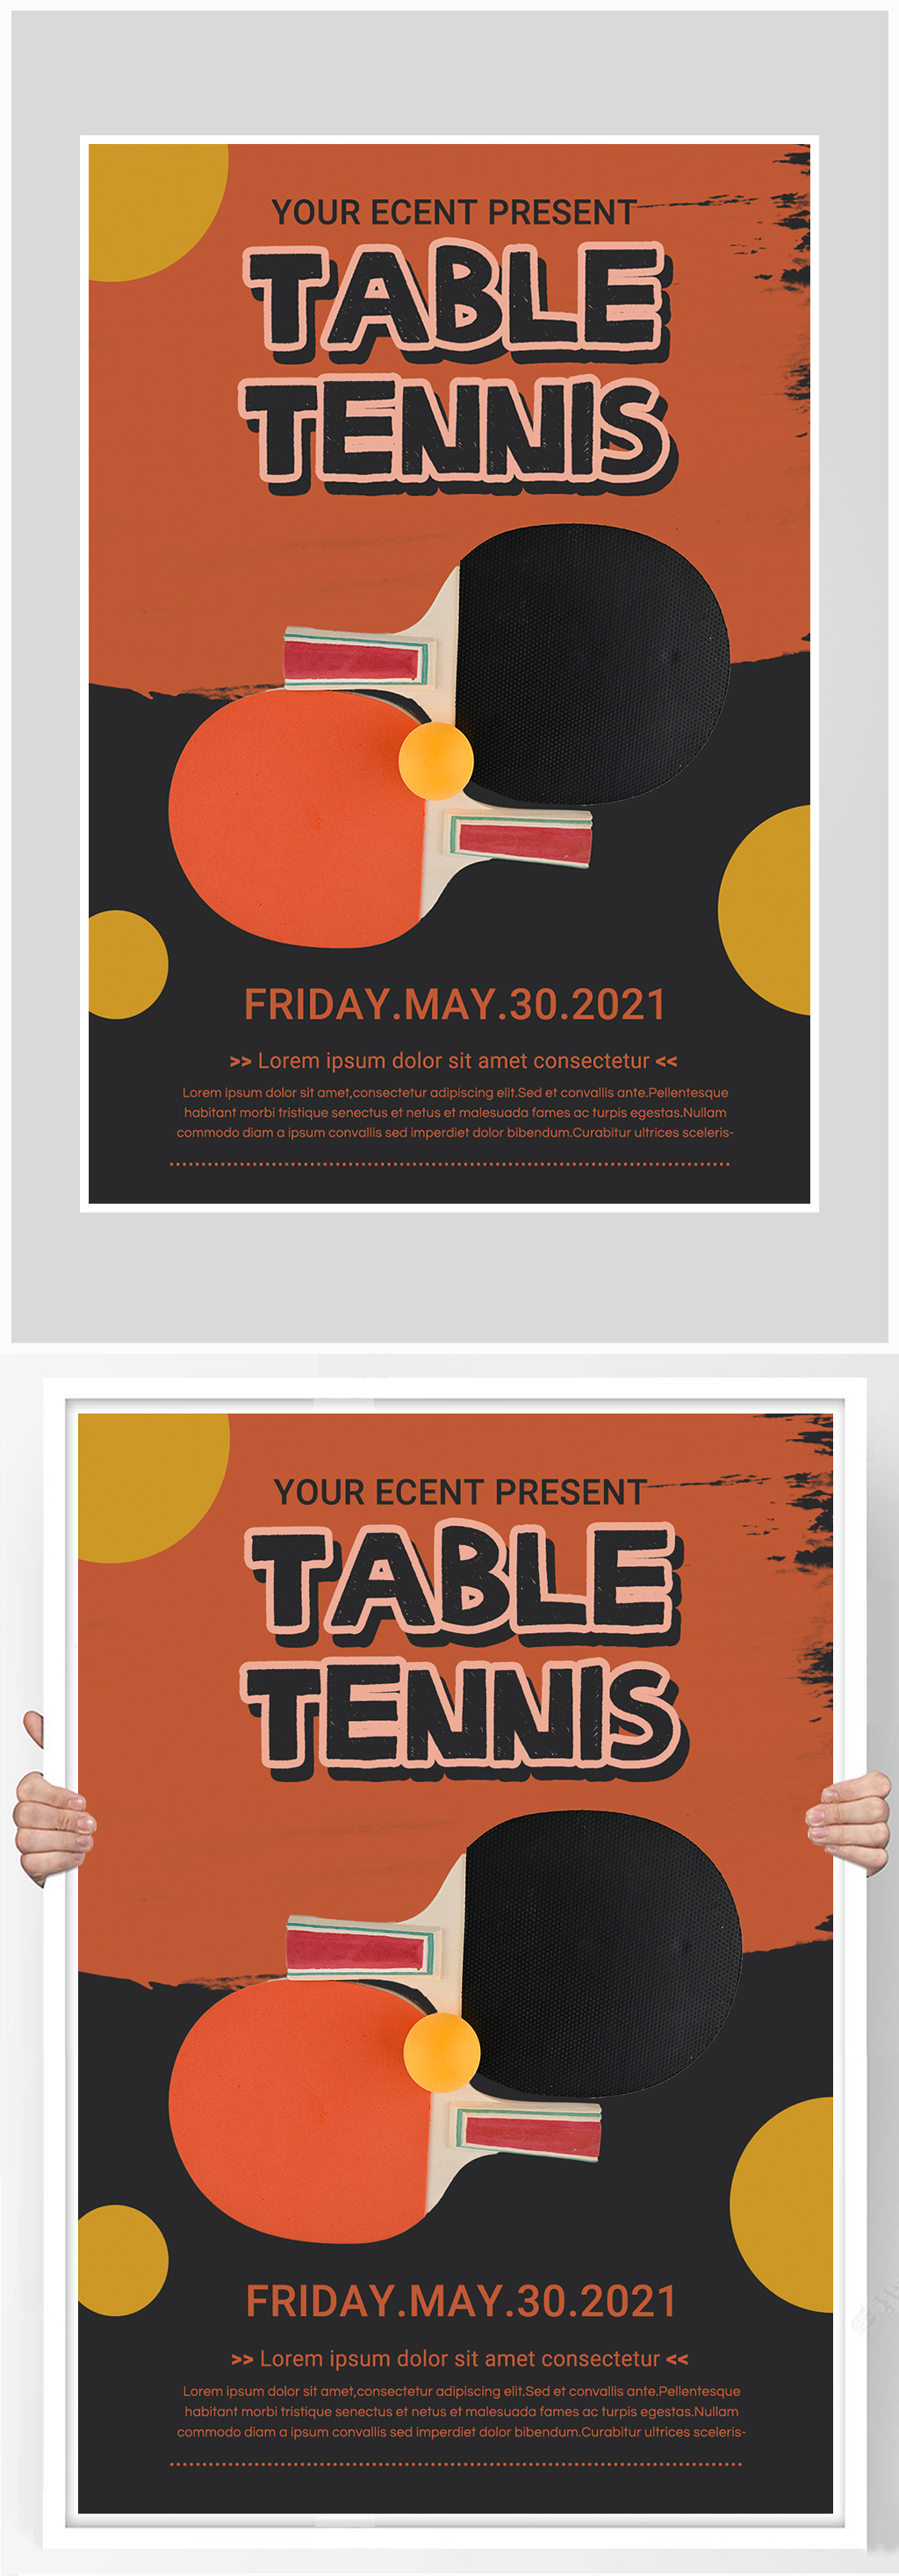 乒乓球英语海报图片